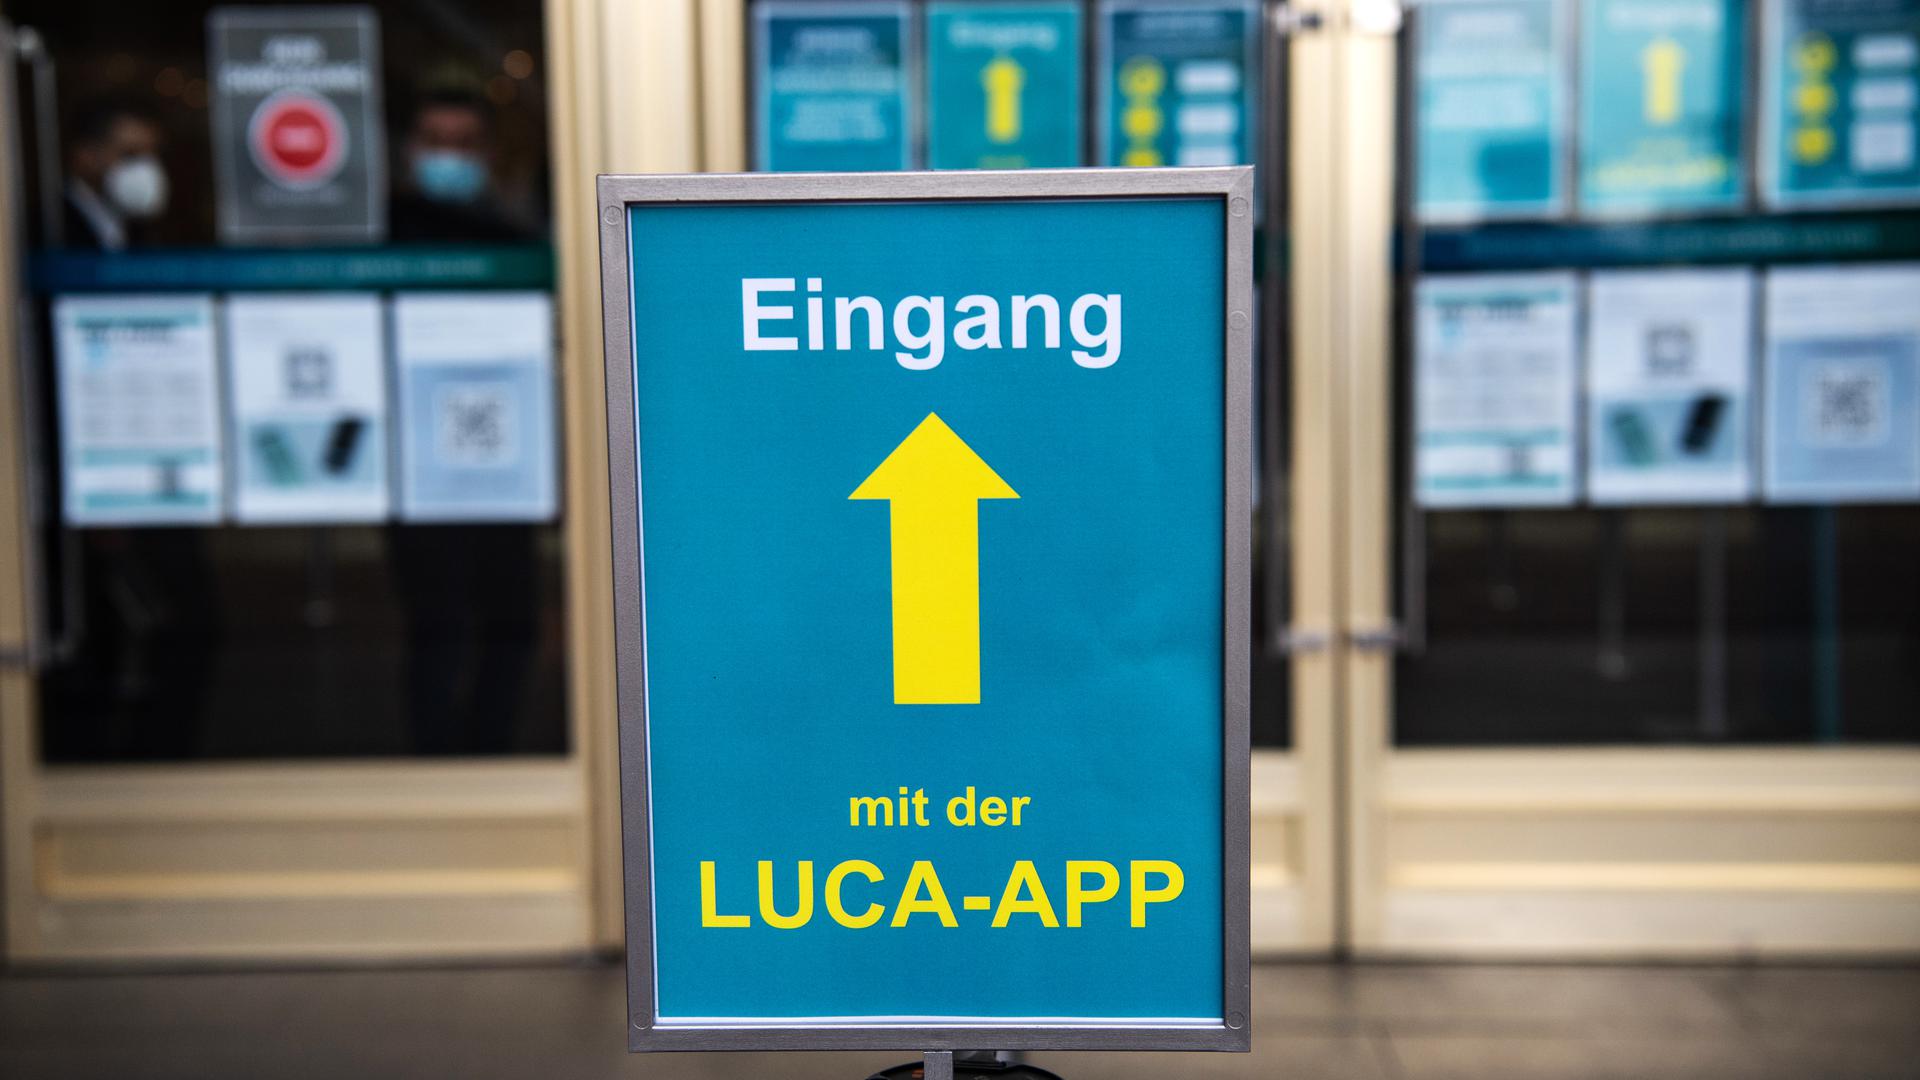 Ein blaues Schild mit einer gelben Aufschrift „Eingang mit der Luca-App“ steht vor einem Türeingang eines Gebäudes.